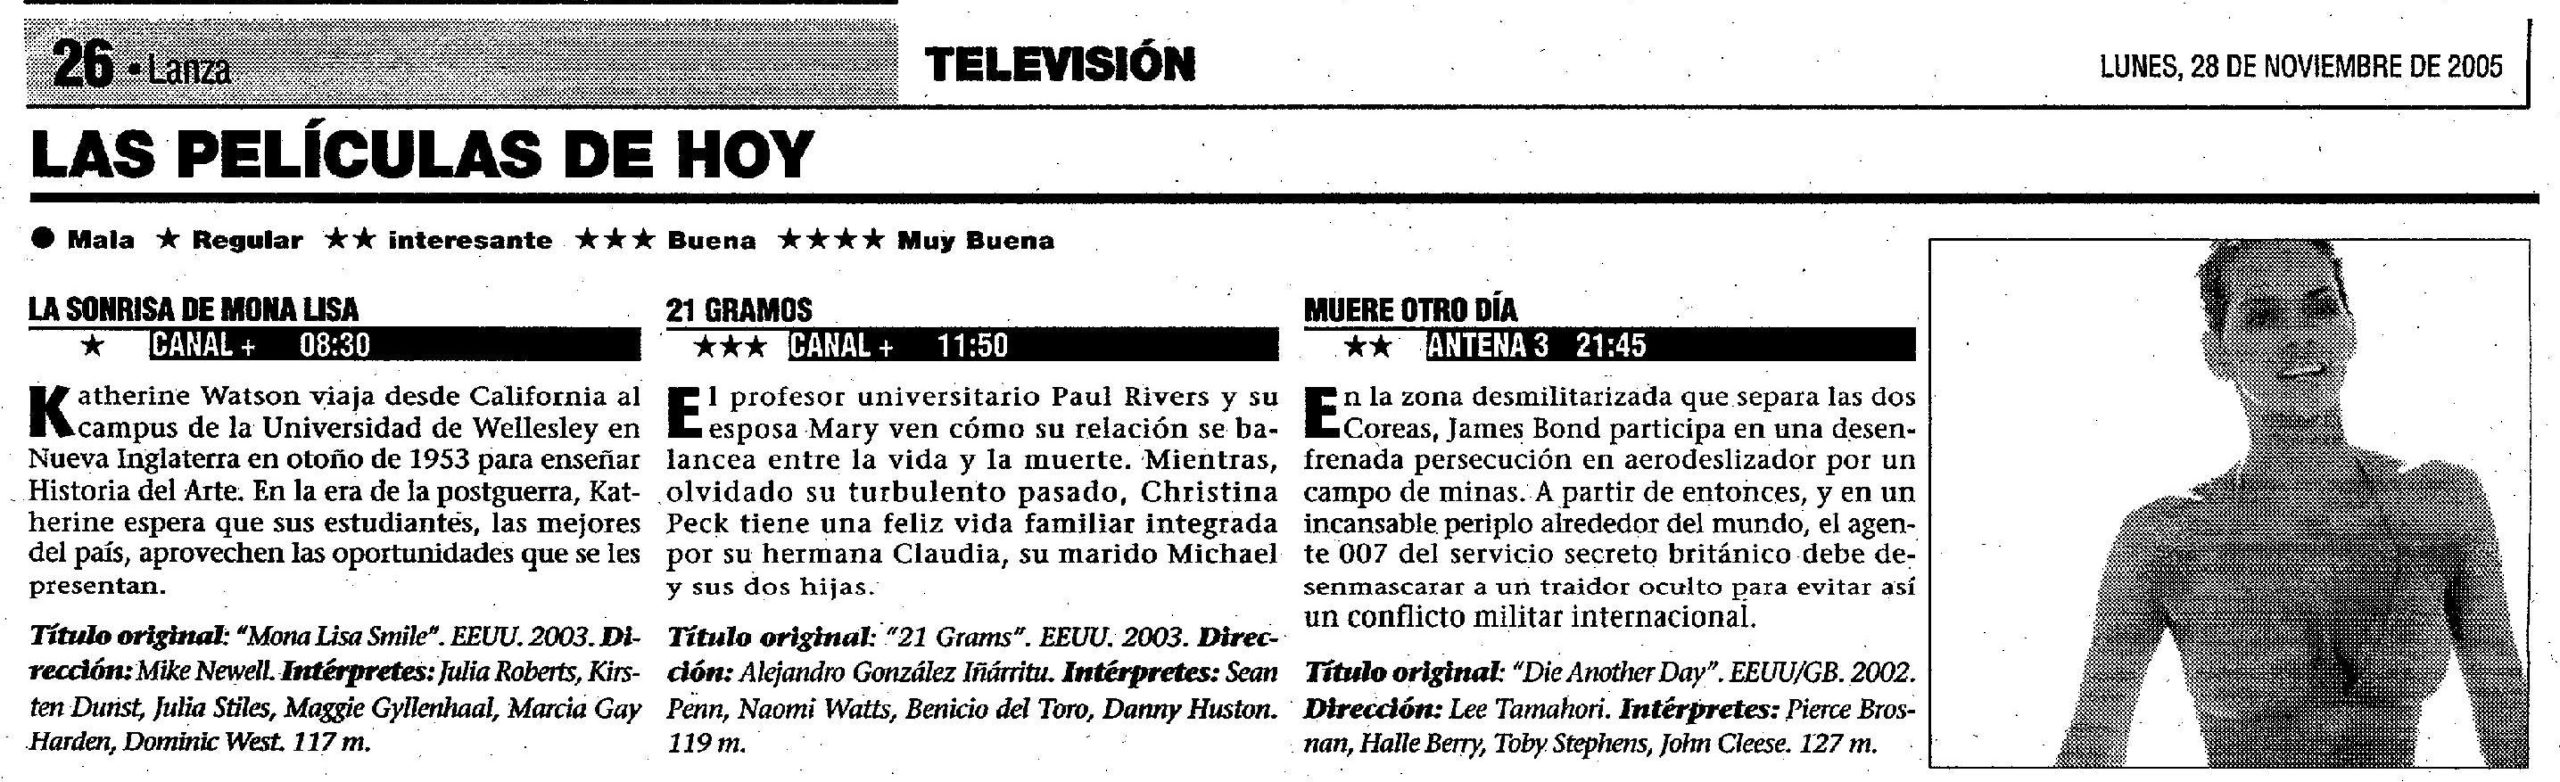 20 2005 11 28 Lanza Ciudad Real 26 Antena3 scaled